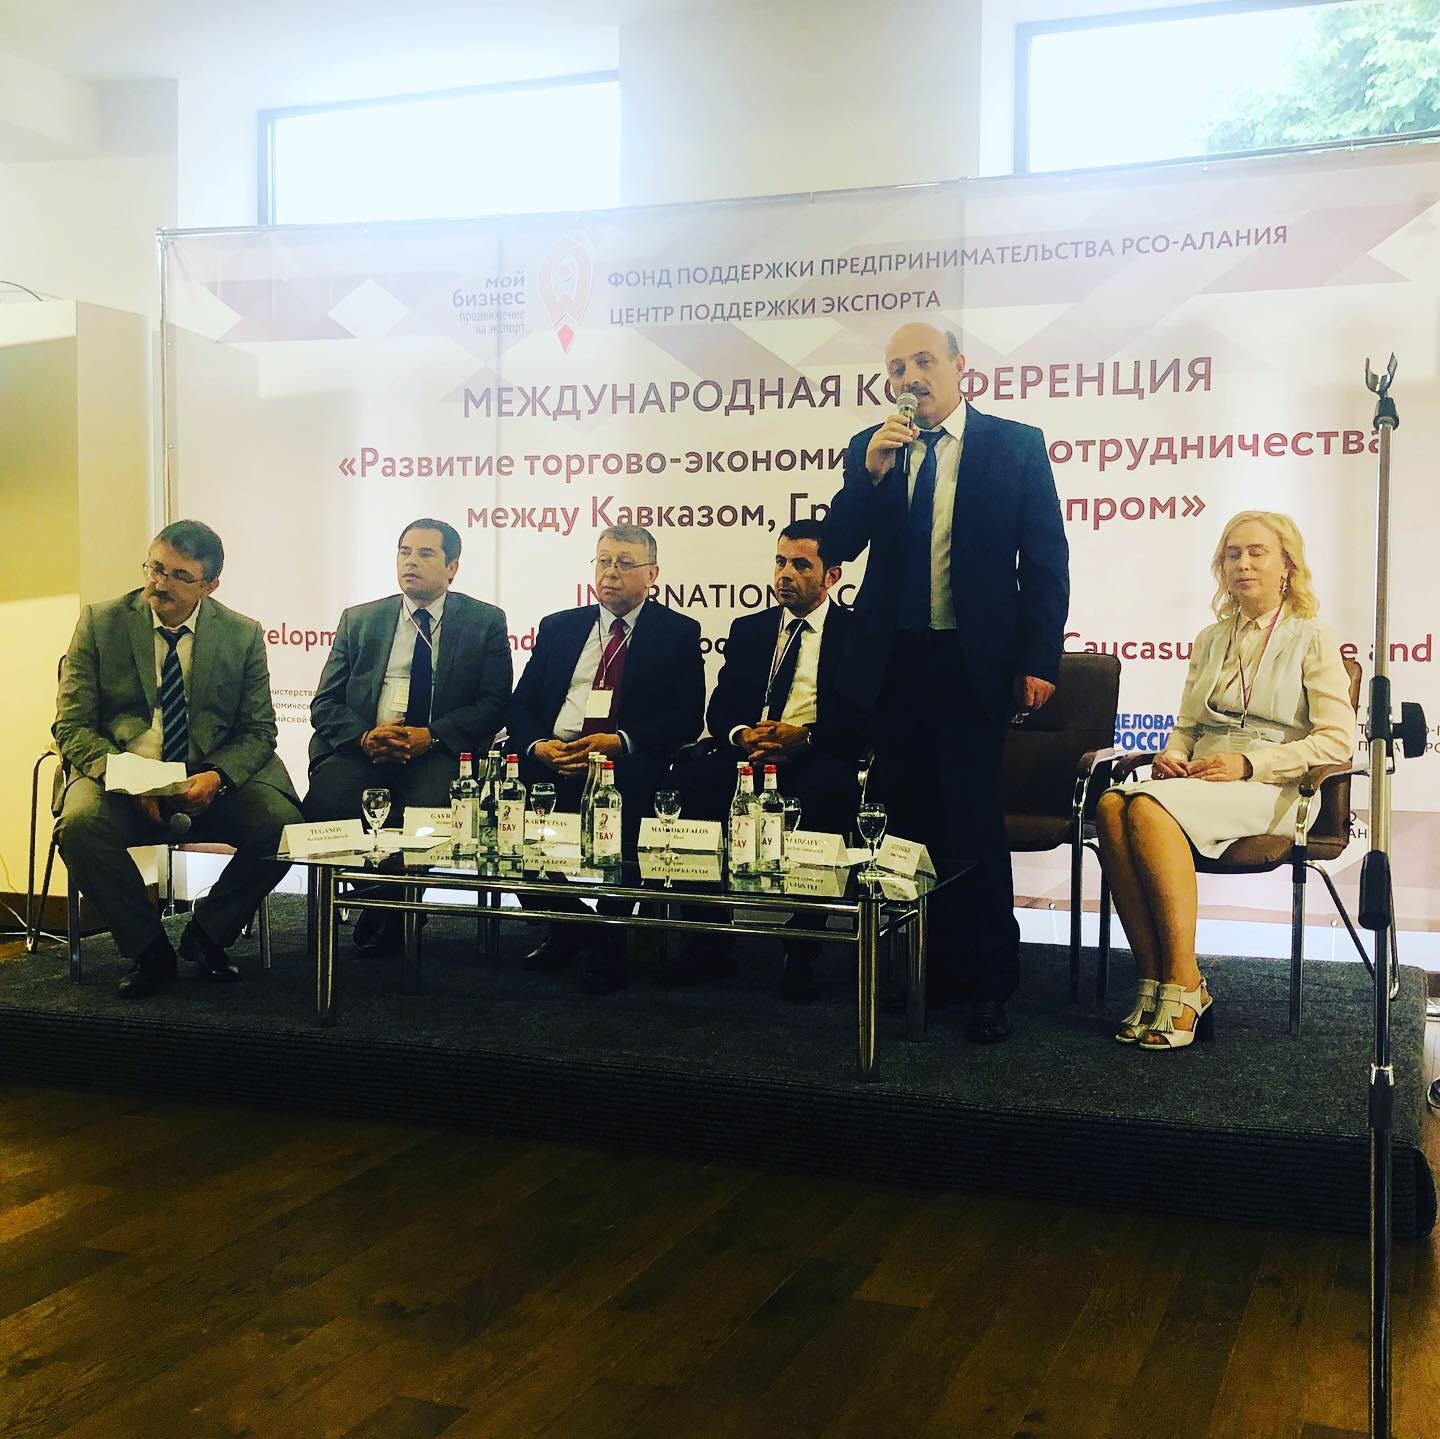 21 июня 2019 года в Национальном музее города Владикавказа Центром поддержки экспорта РСО-Алания организован семинар по теме: «Возможности онлайн экспорта»